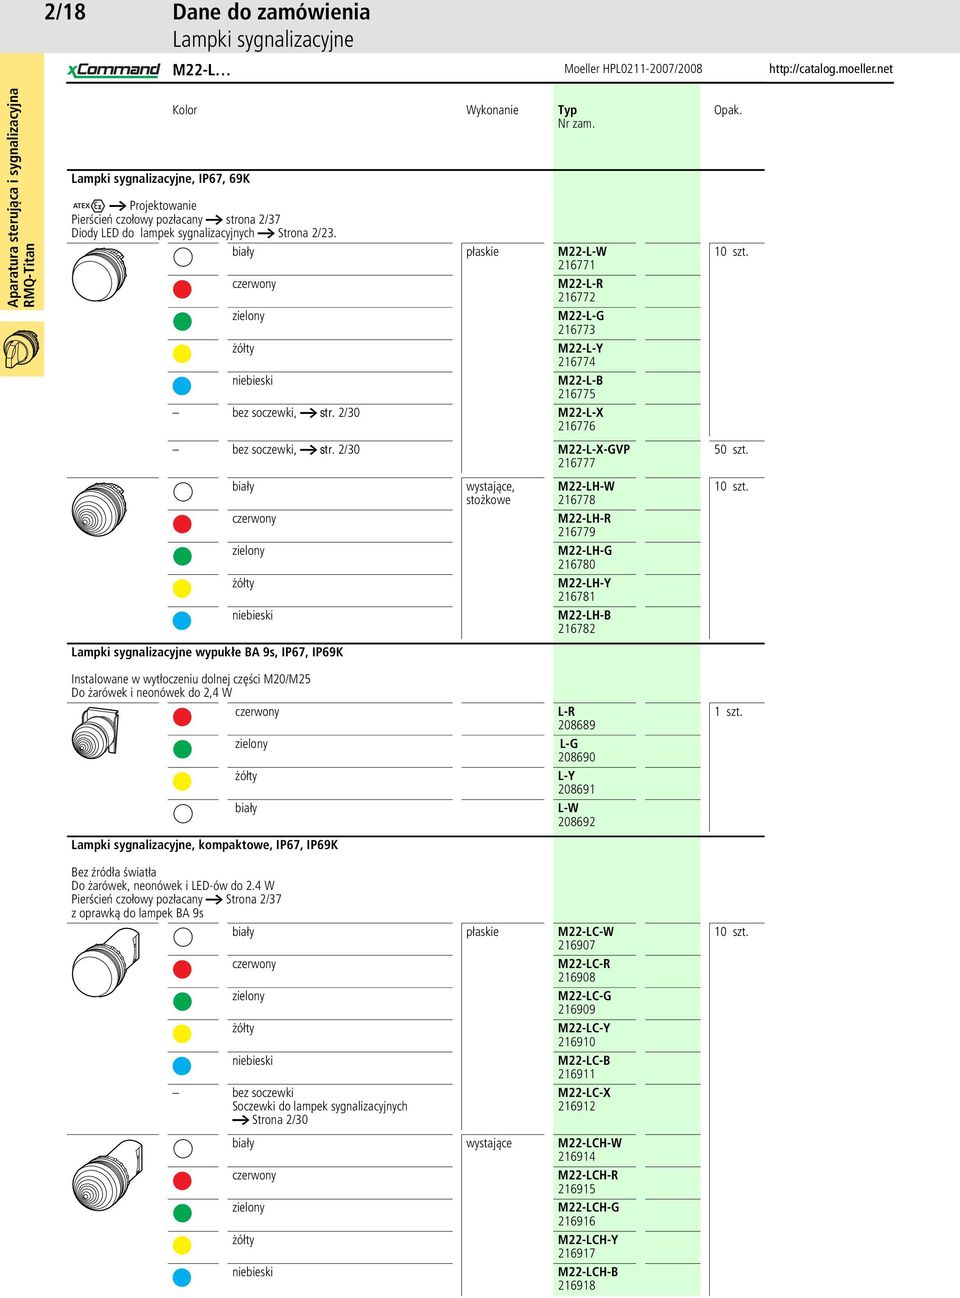 2/30 M22-L-X-GVP 216777 biały czerwony zielony żółty niebieski Lampki sygnalizacyjne wypukłe BA 9s, IP67, IP69K wystające, stożkowe M22-LH-W 216778 M22-LH-R 216779 M22-LH-G 216780 M22-LH-Y 216781